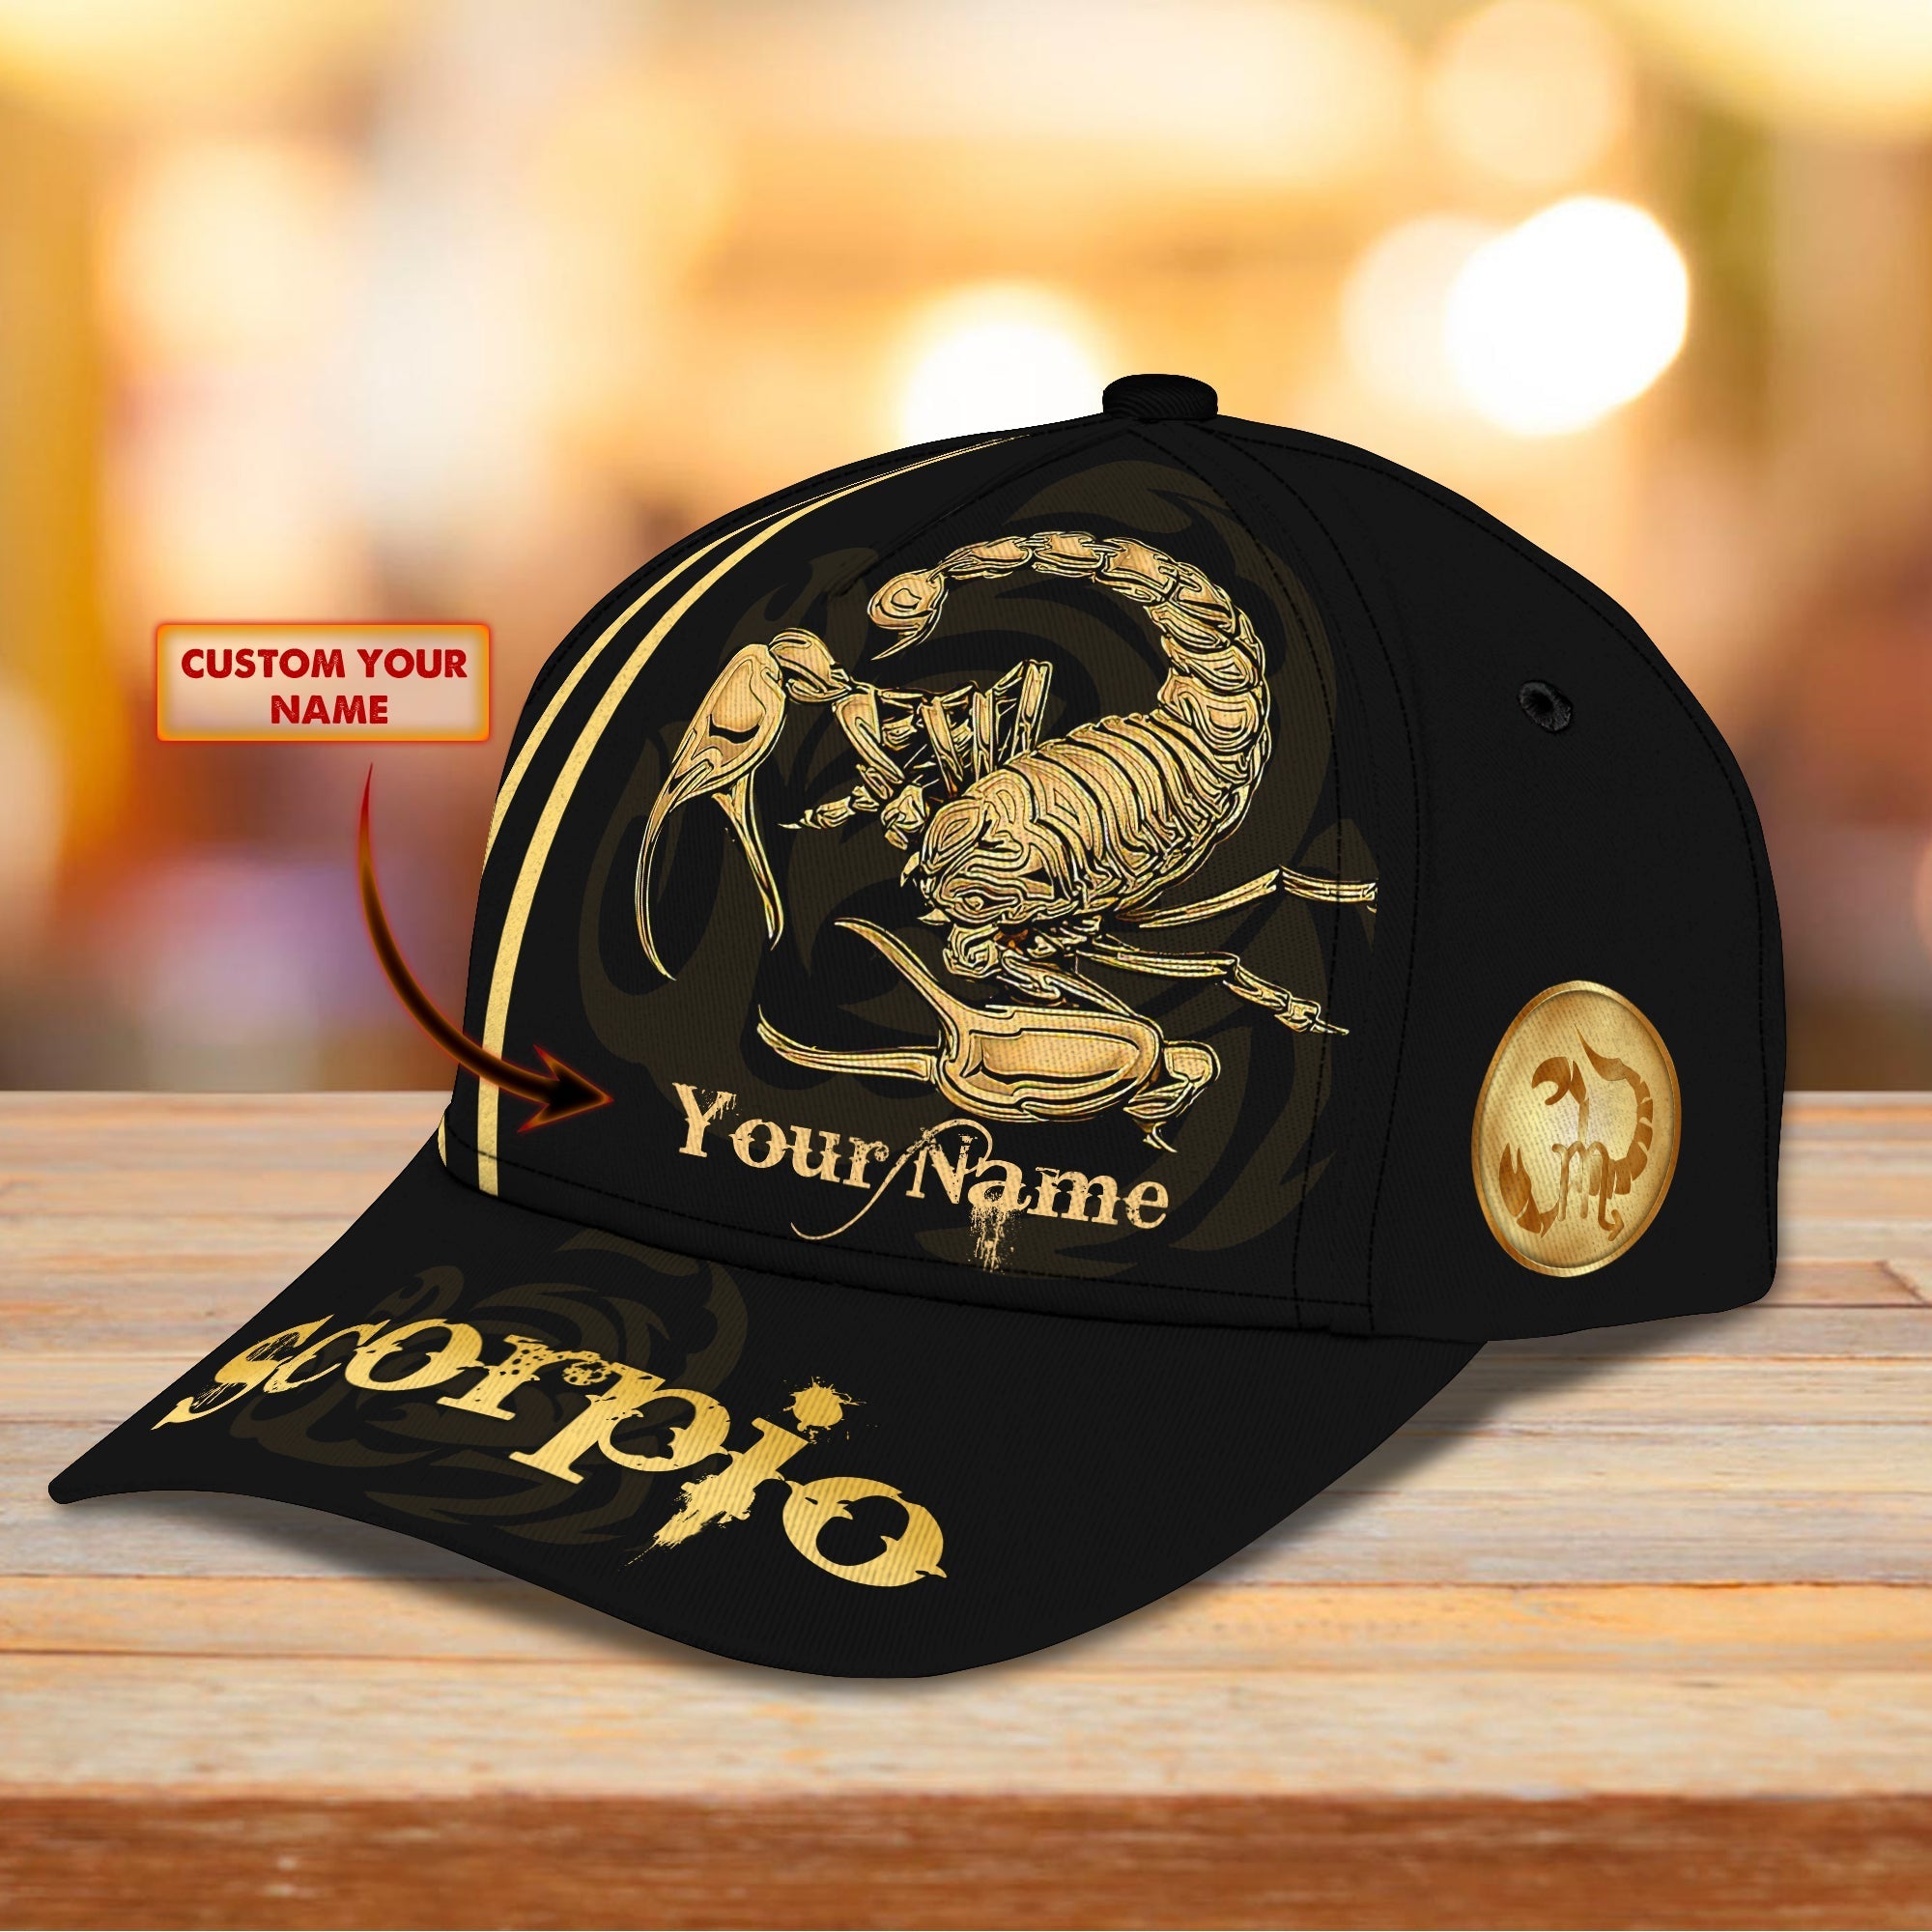 Customized Scorpio Baseball Cap Hat/ 3D Full Printed Scorpio Hat/ Scorpio Cap